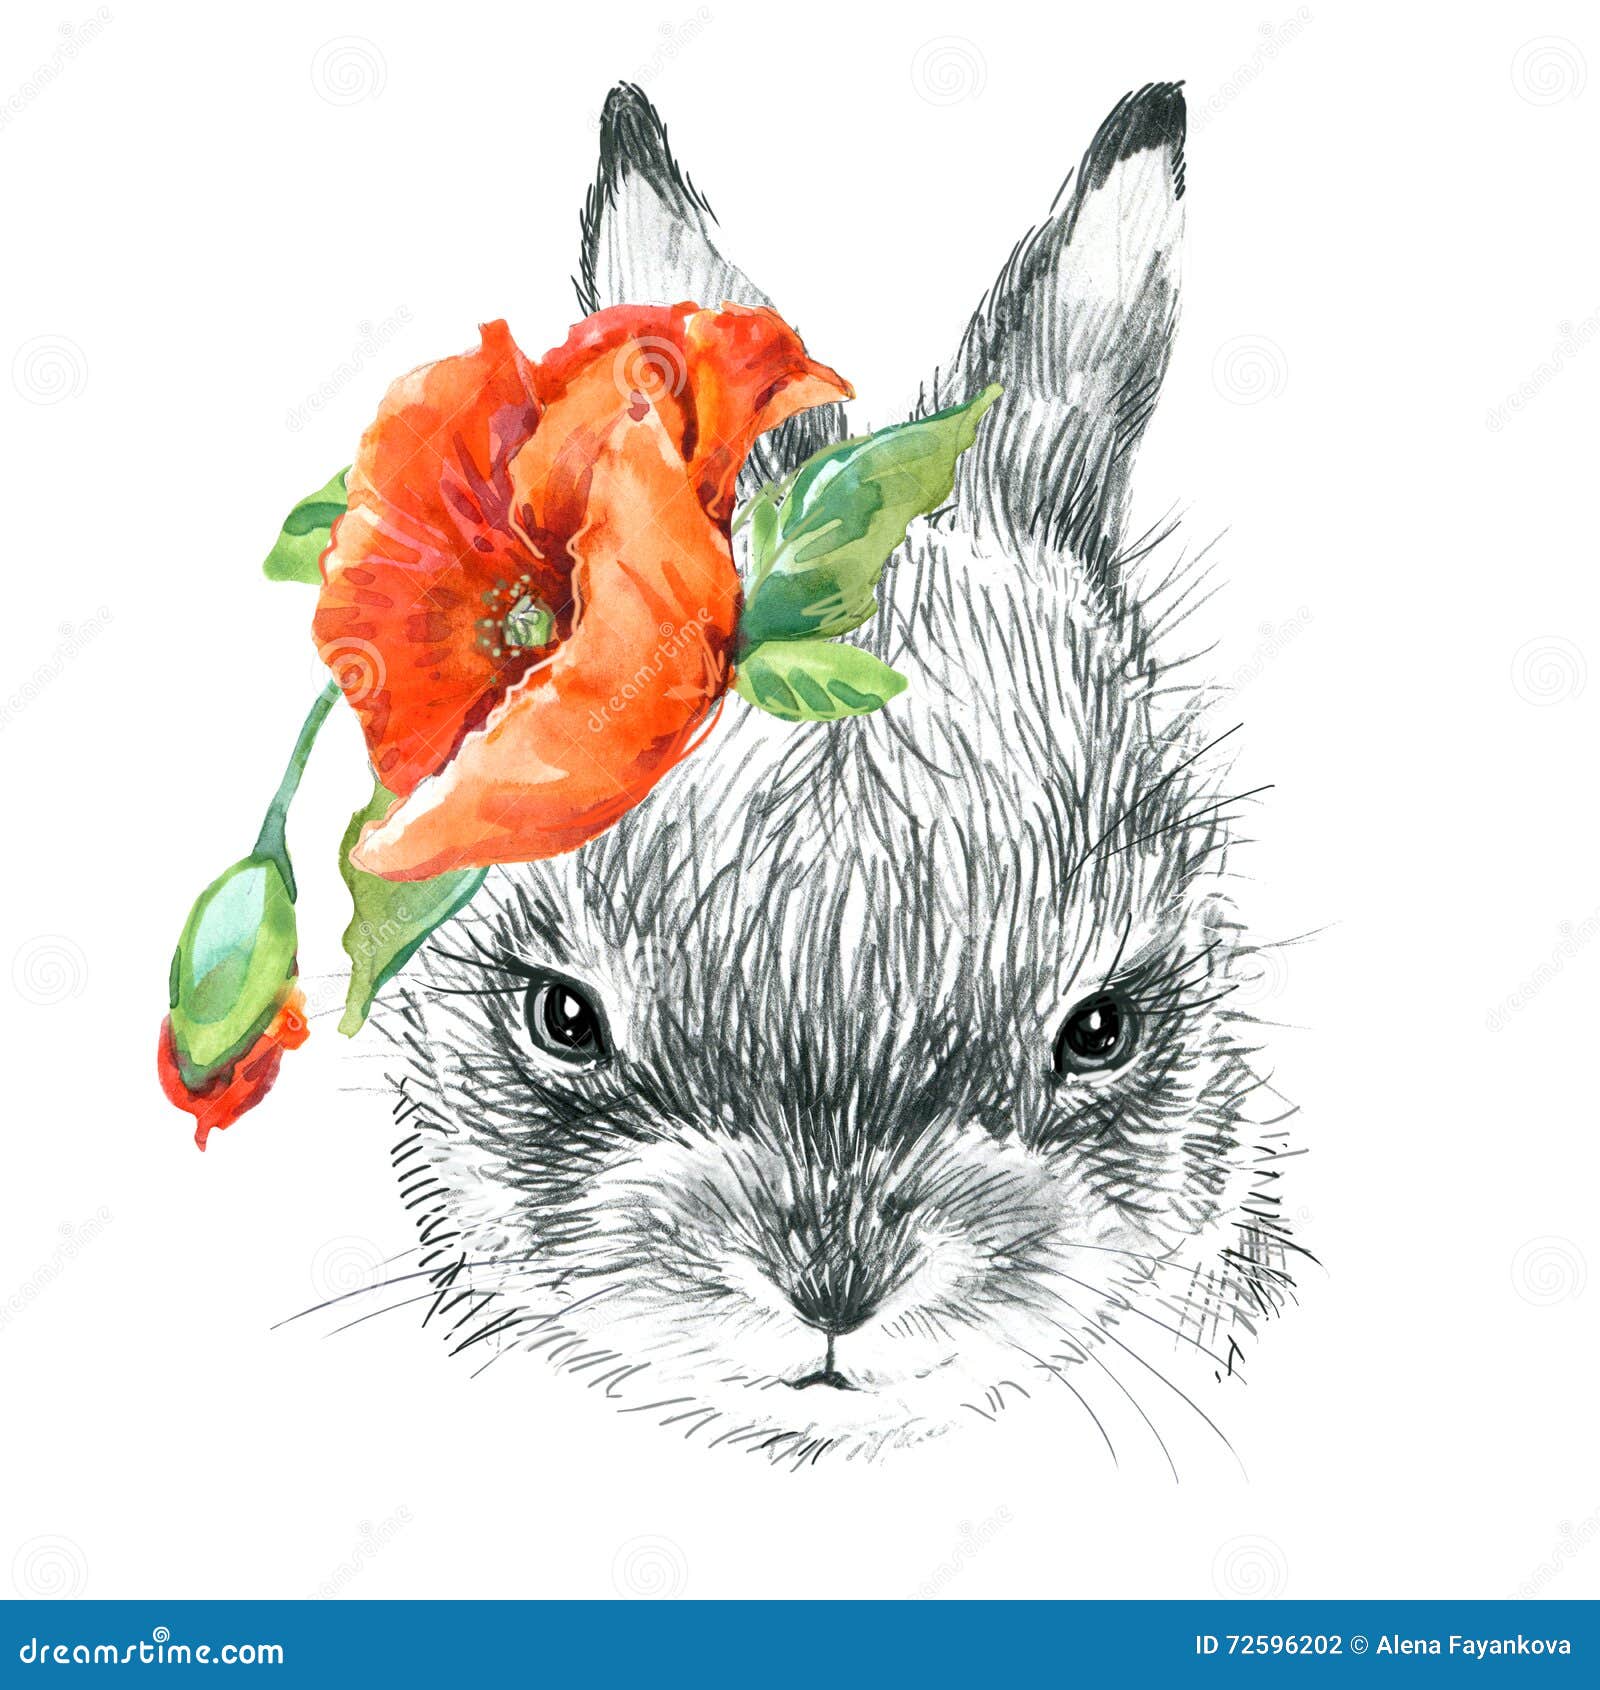 bun sketches 🐰 #art #bunnies #rabbits #sketchbook #pendrawing #inkdrawing  #artistsoninstagram #sketch | Instagram